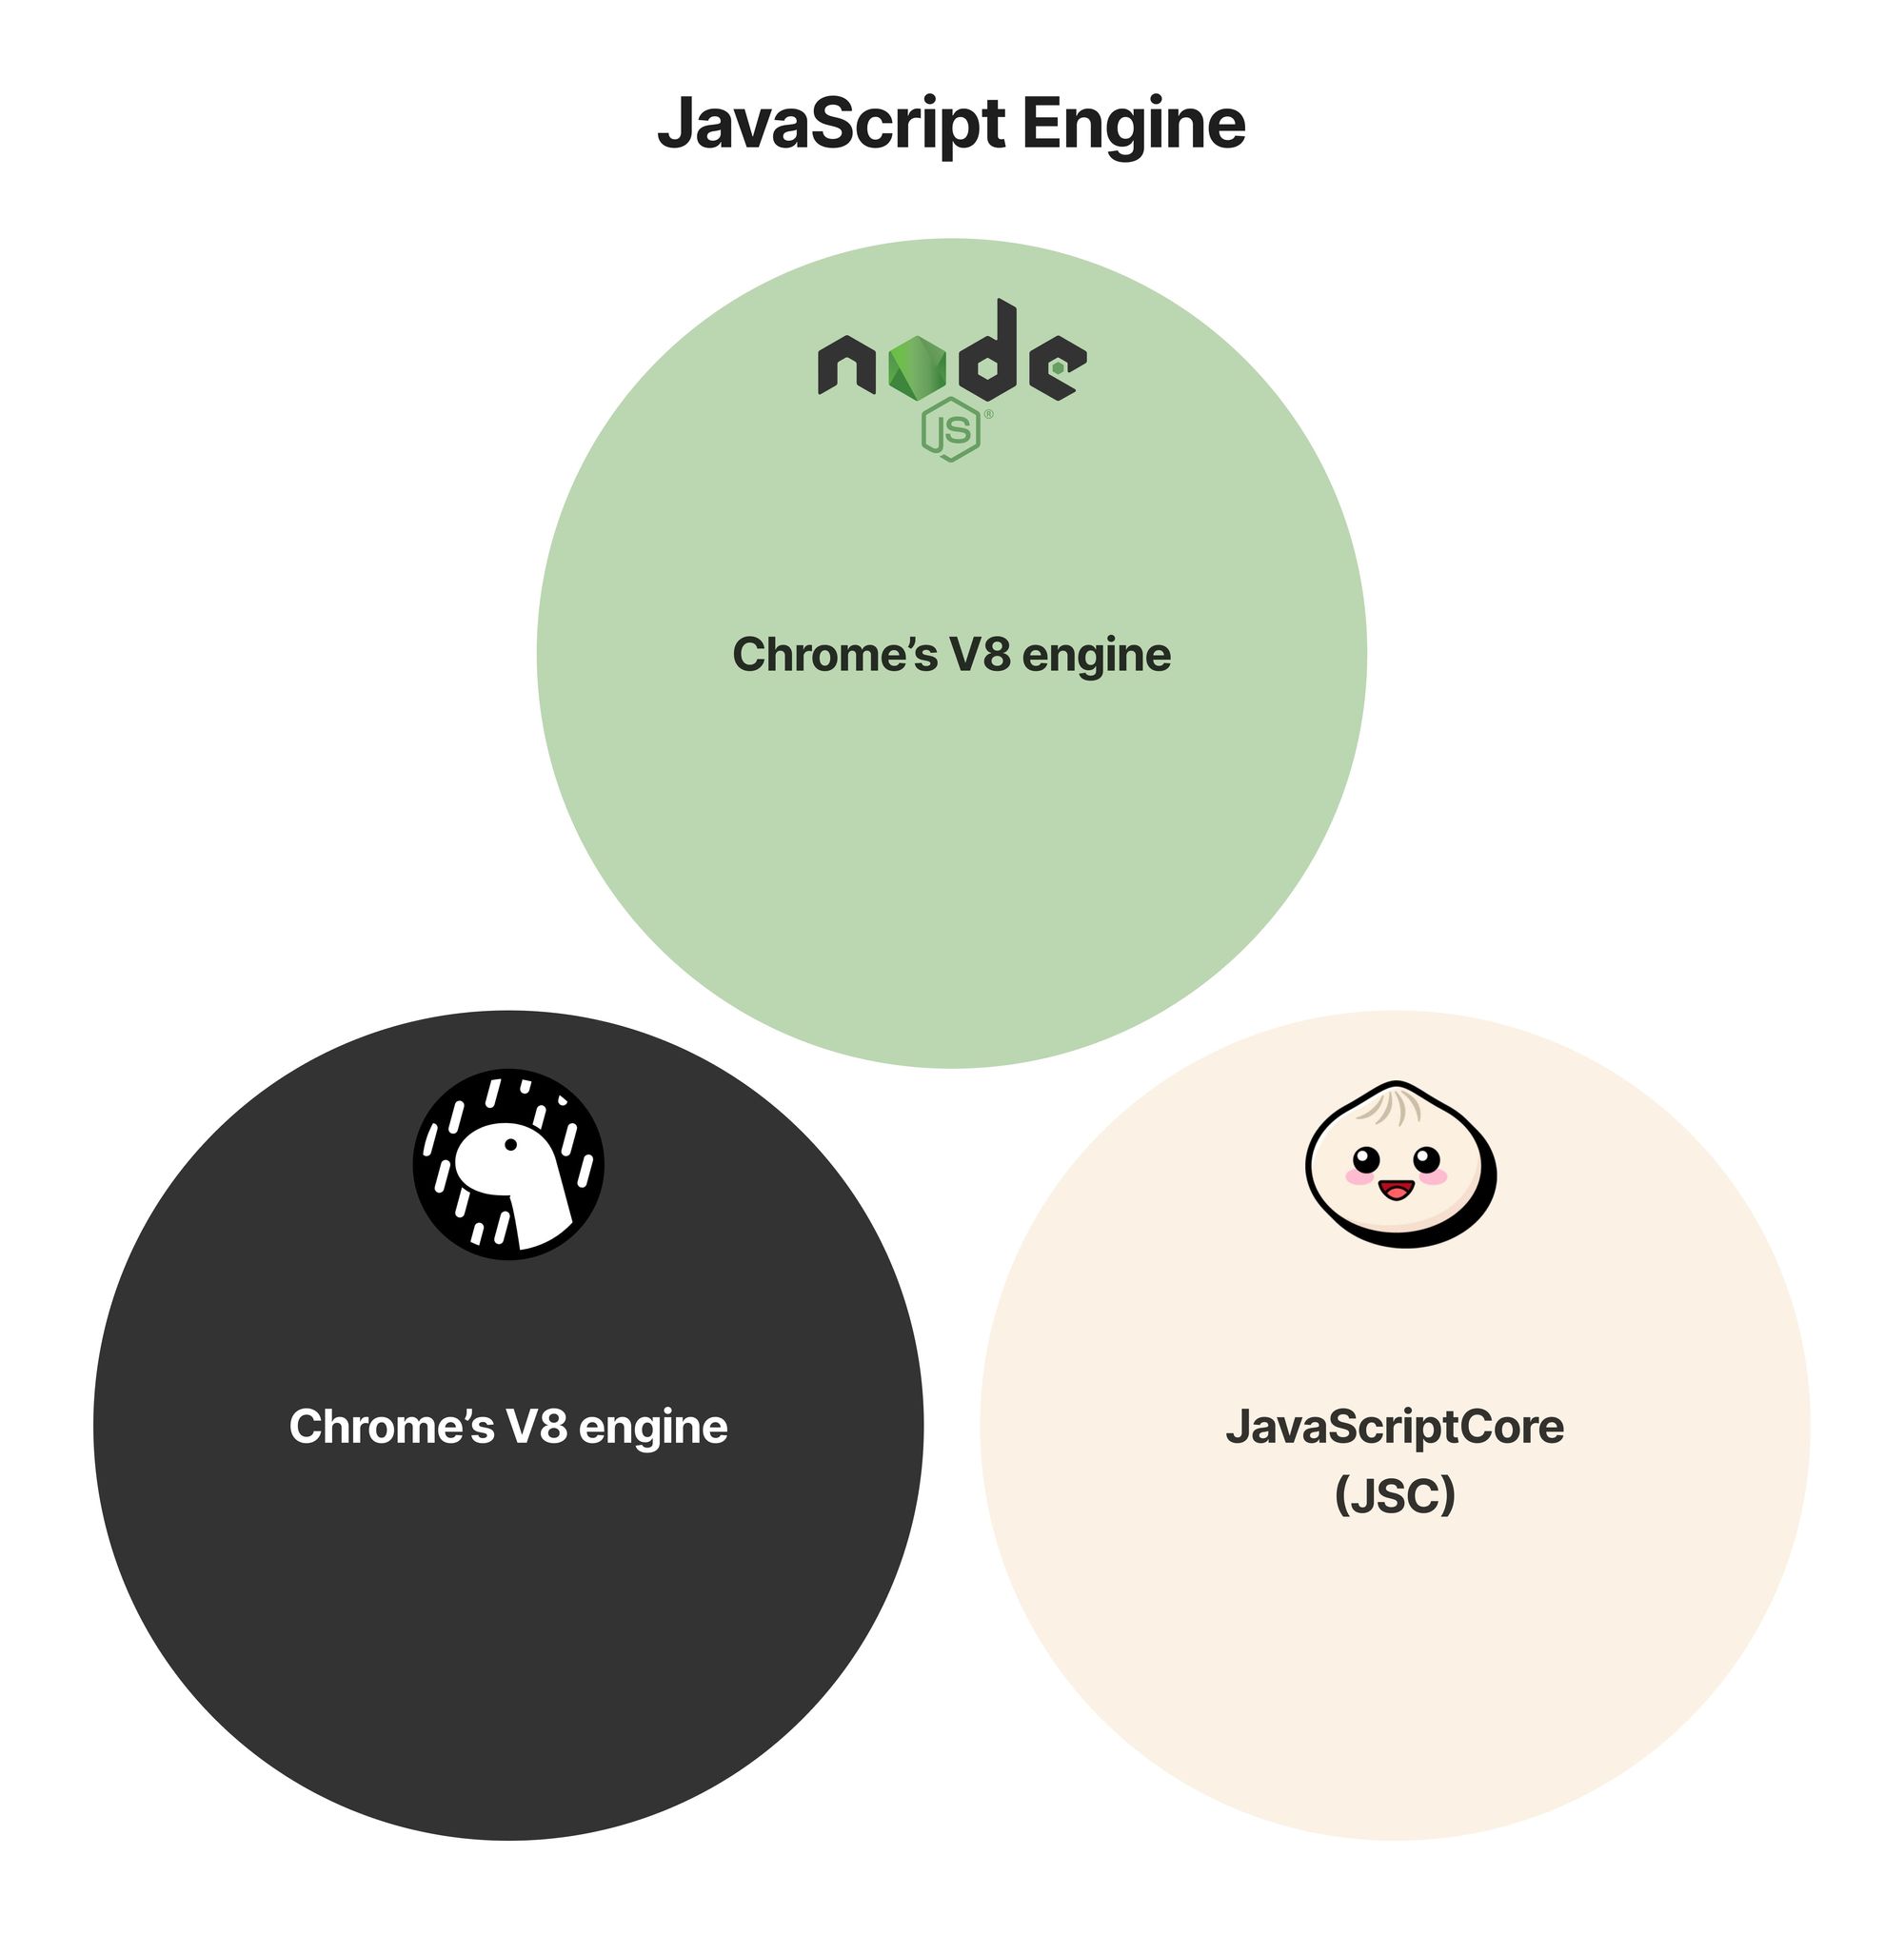 JavaScript engines: V8 vs. JavaScriptCore (JSC)